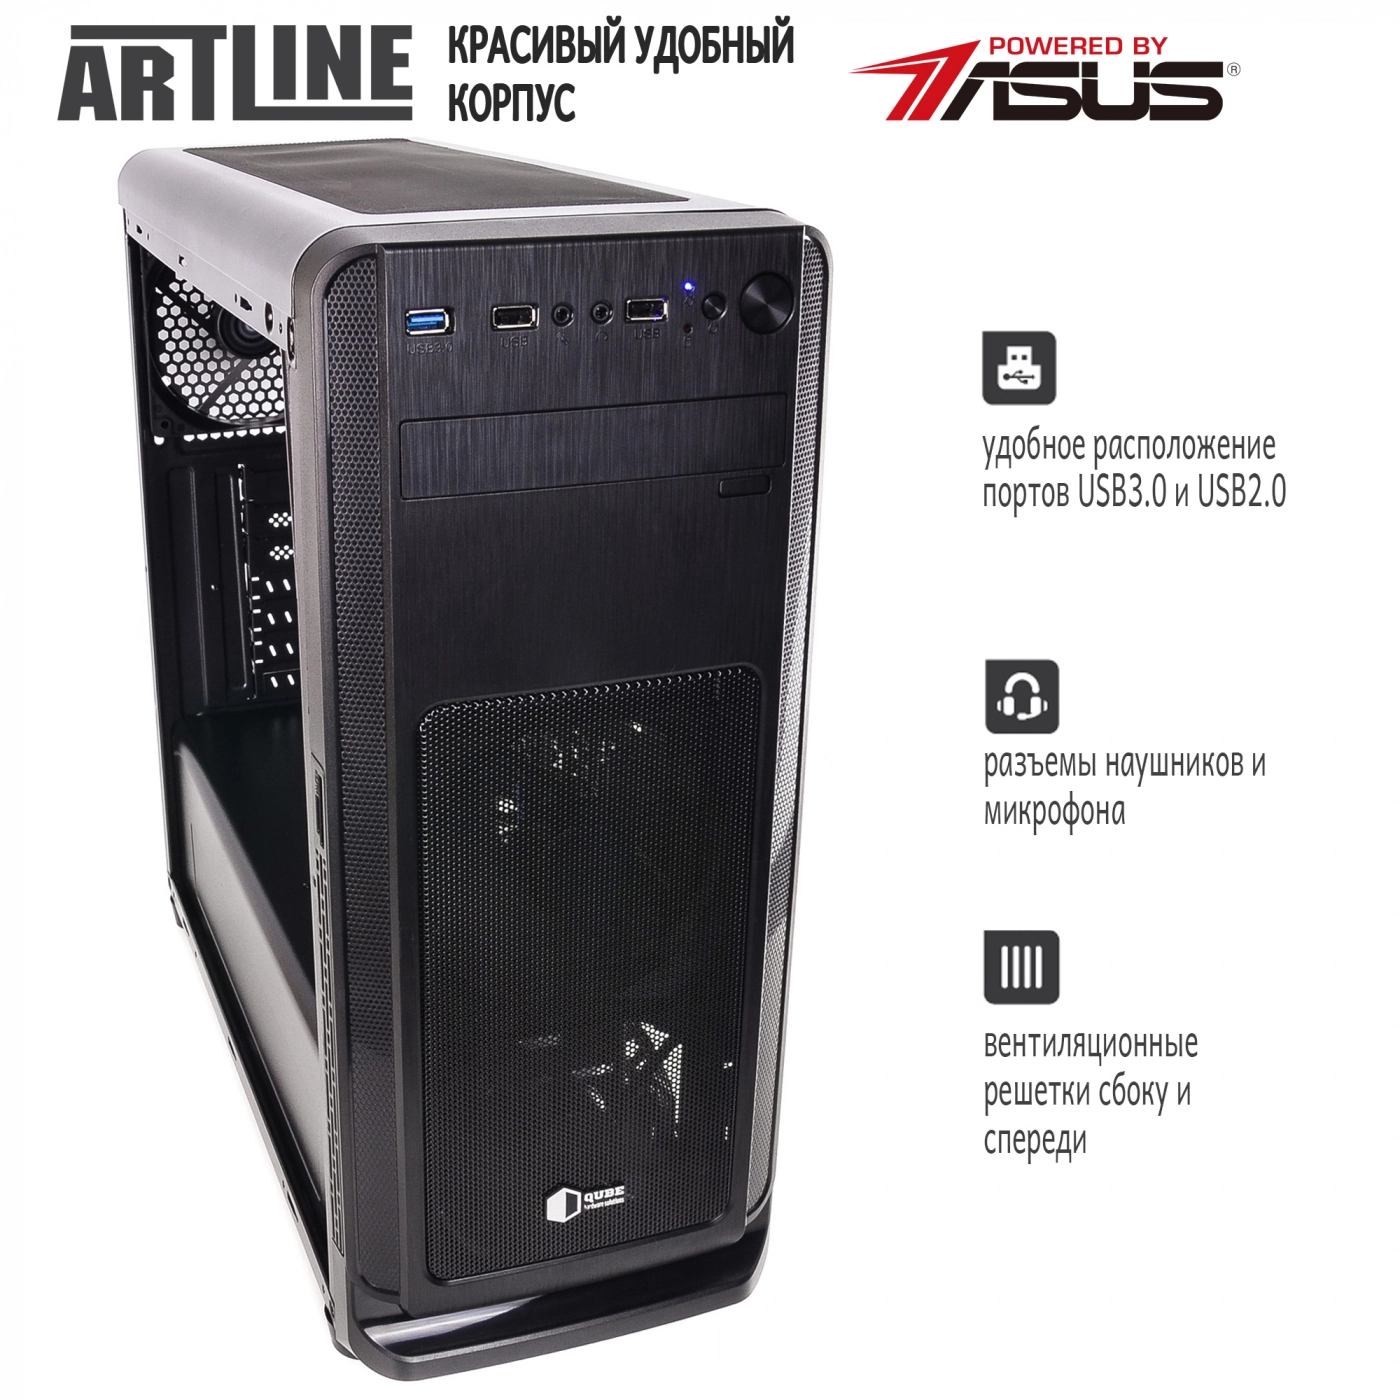 Купить Сервер ARTLINE Business T28v02 - фото 4